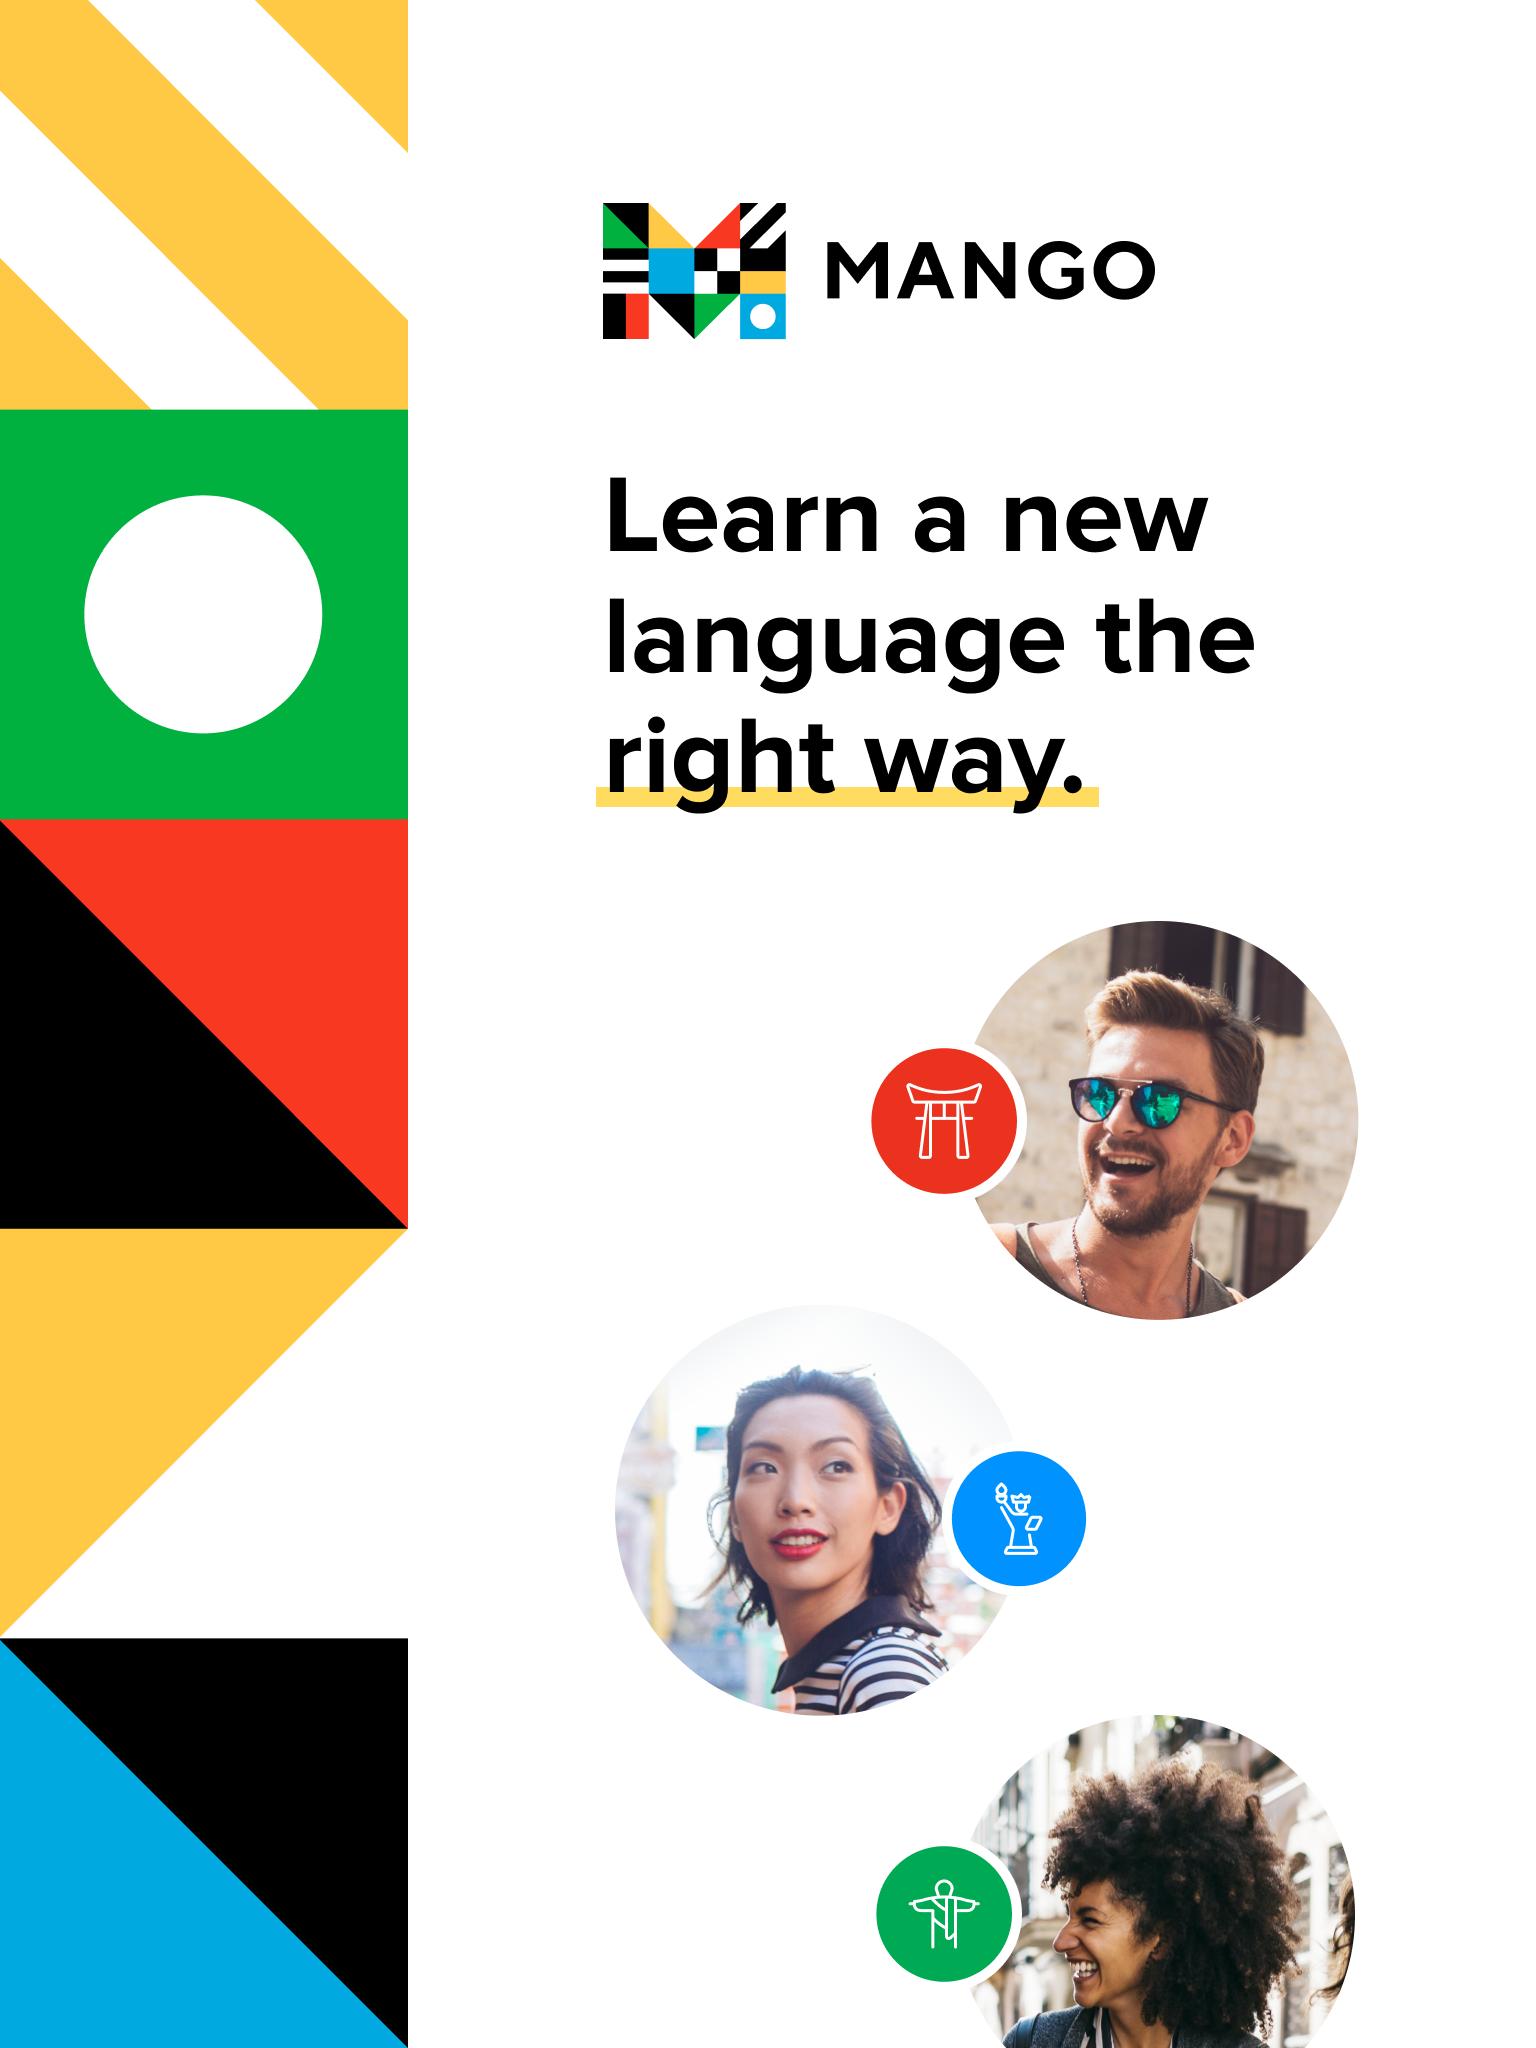 4 Mango Languages